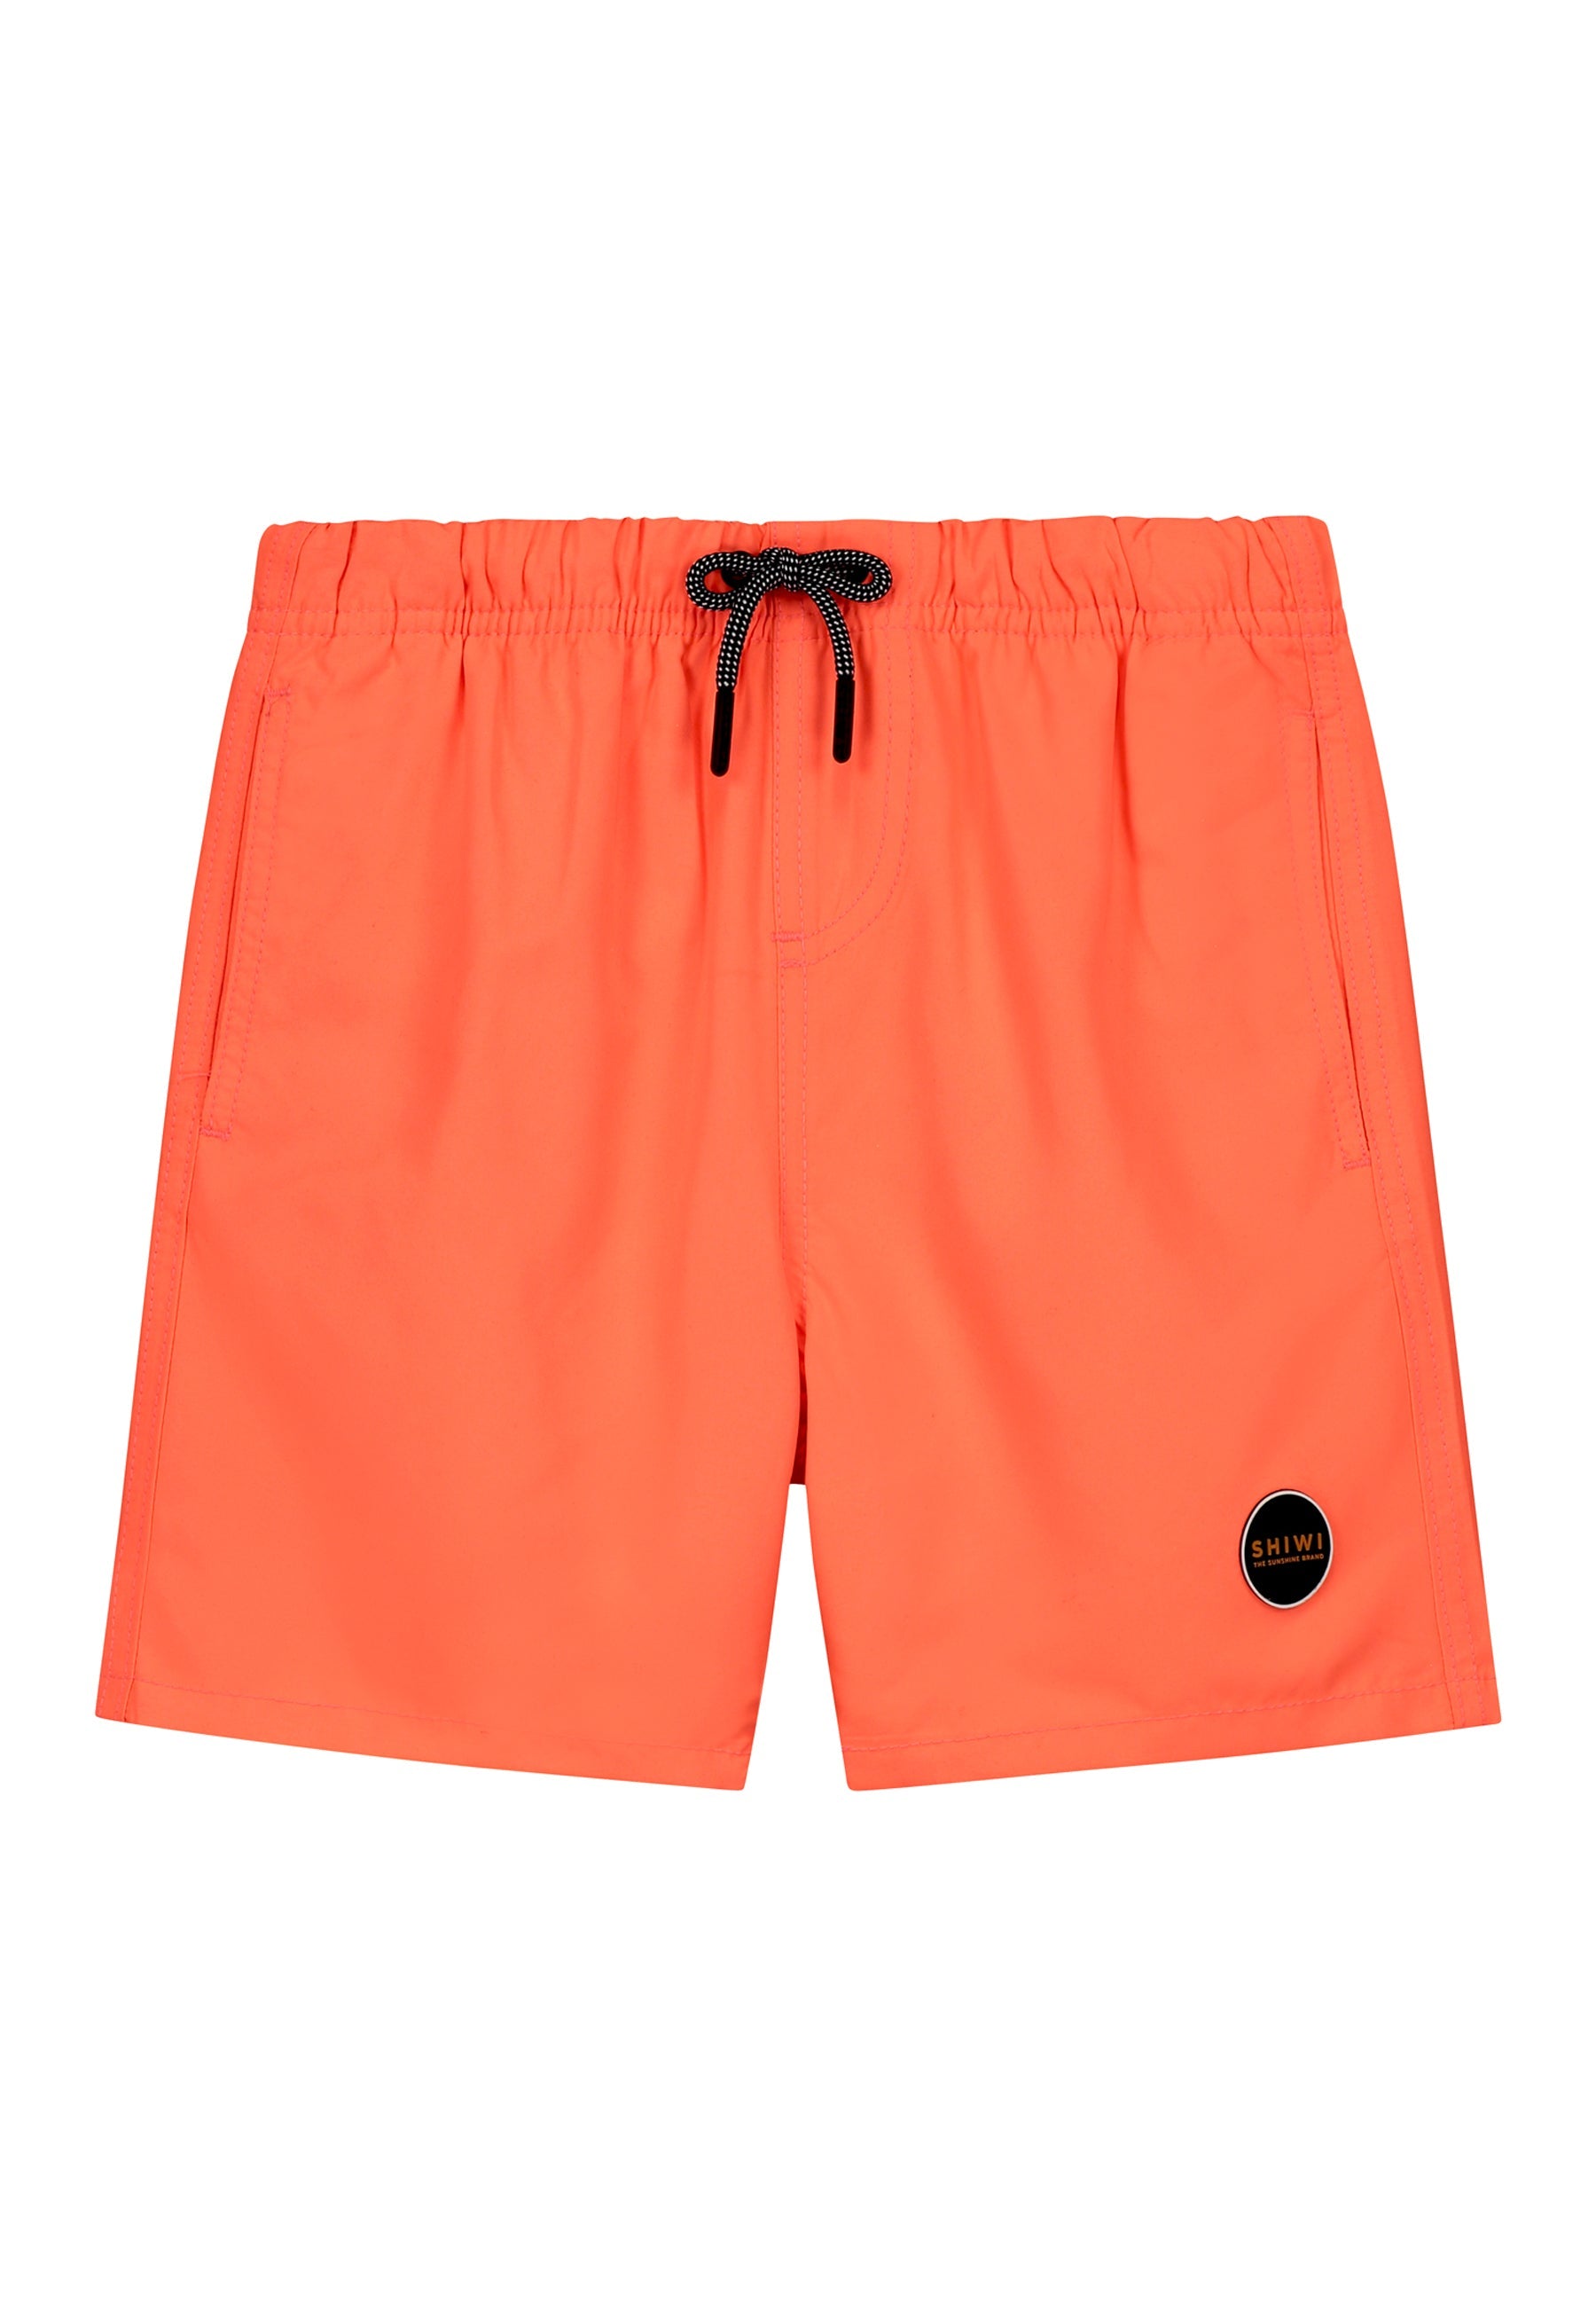 Jongens Swim shorts mike van Shiwi in de kleur neon orange in maat 158-164.